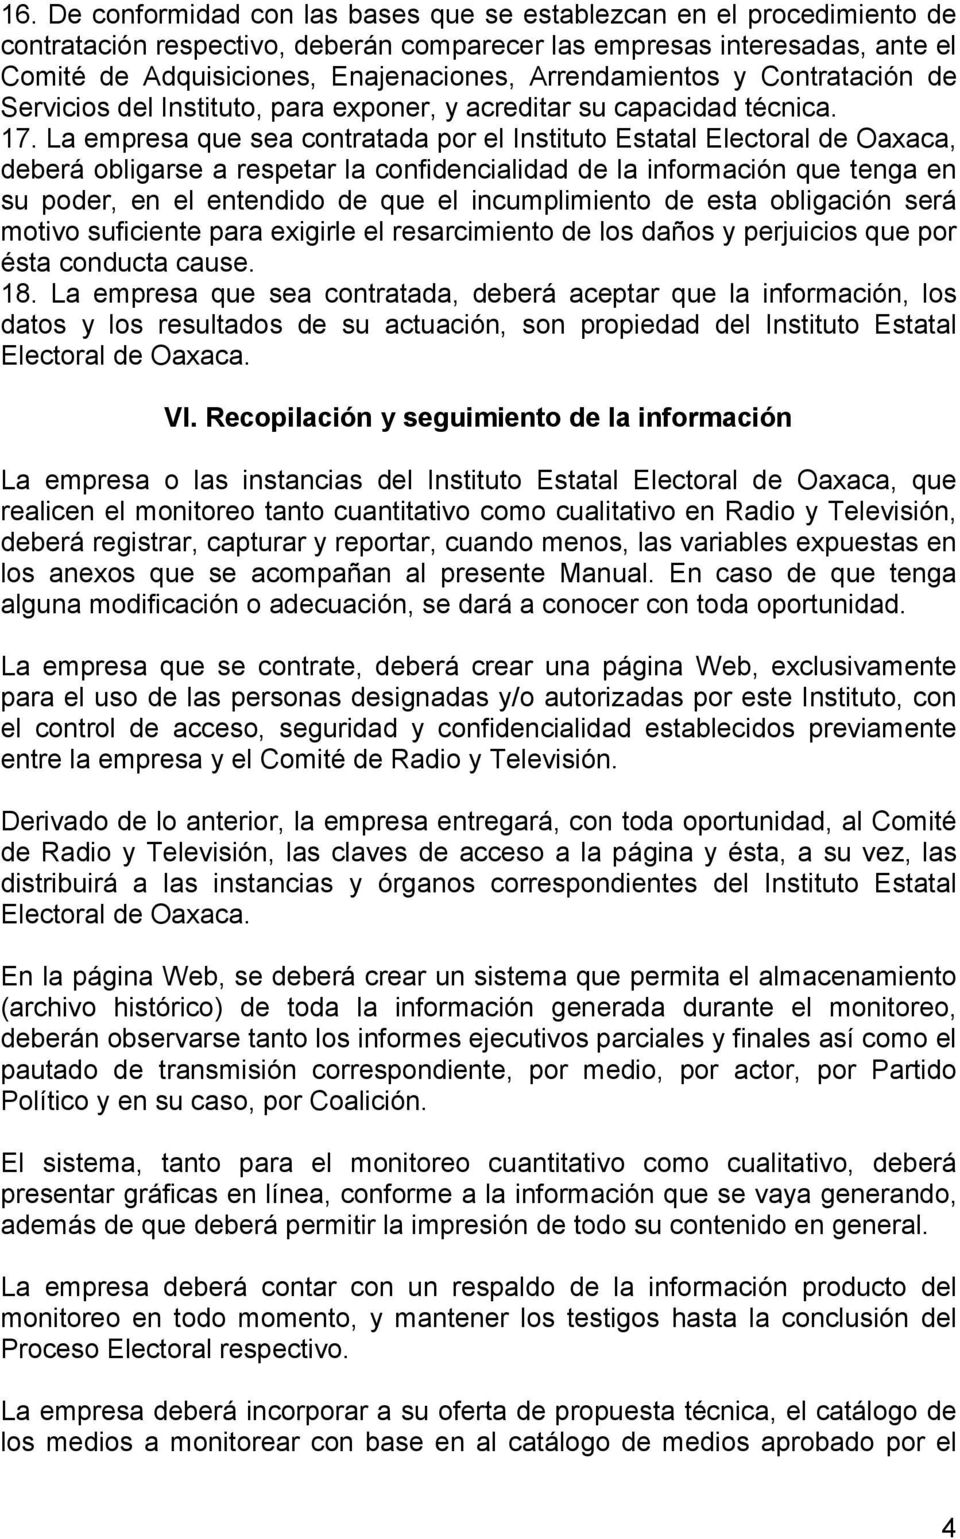 La empresa que sea contratada por el Instituto Estatal Electoral de Oaxaca, deberá obligarse a respetar la confidencialidad de la información que tenga en su poder, en el entendido de que el